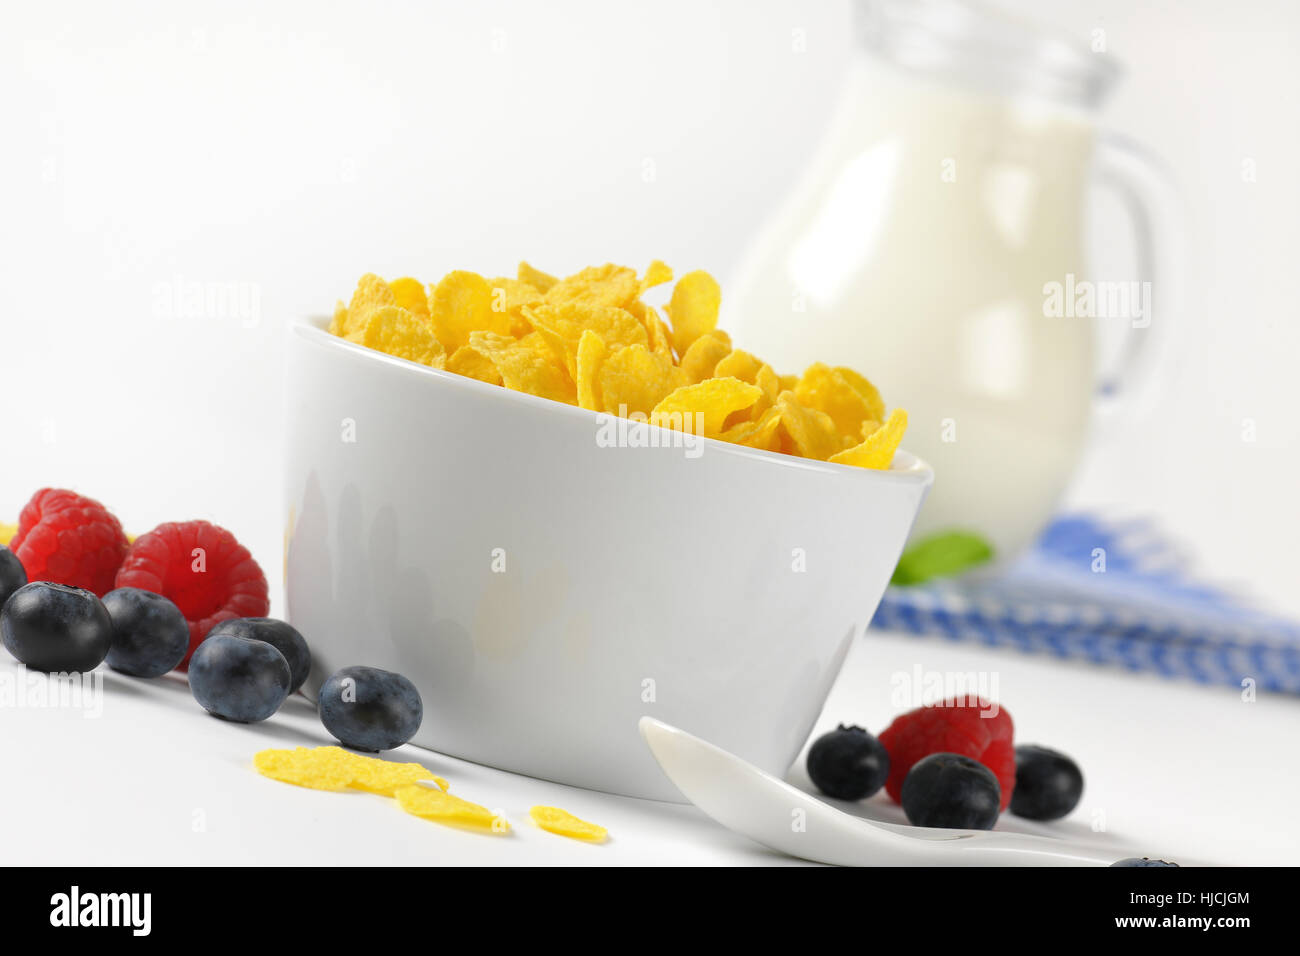 Schüssel mit Cornflakes und Krug Milch auf kariertem Geschirrtuch - Nahaufnahme Stockfoto